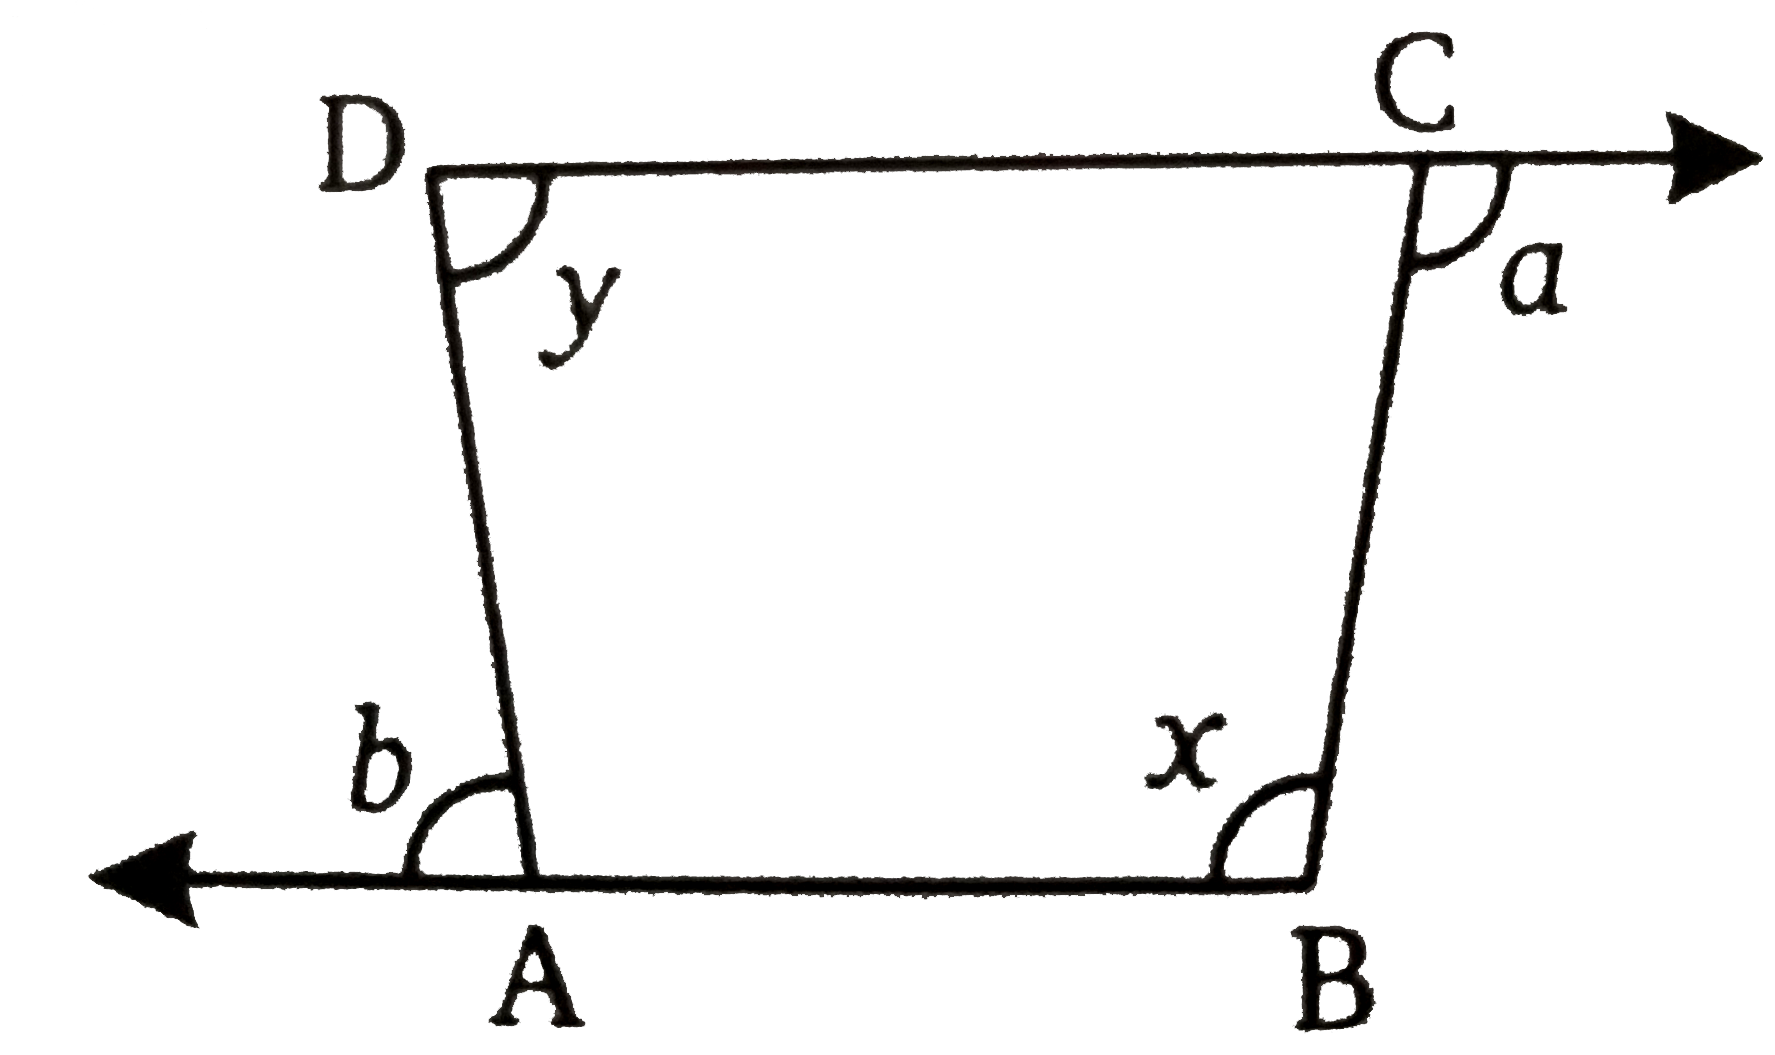 आकृति में, भुजाओं BA और DC द्वारा निर्मित एक चतुर्भुज दर्शाया गया है तो सिद्ध कीजिए कि a+b=x+y यदि